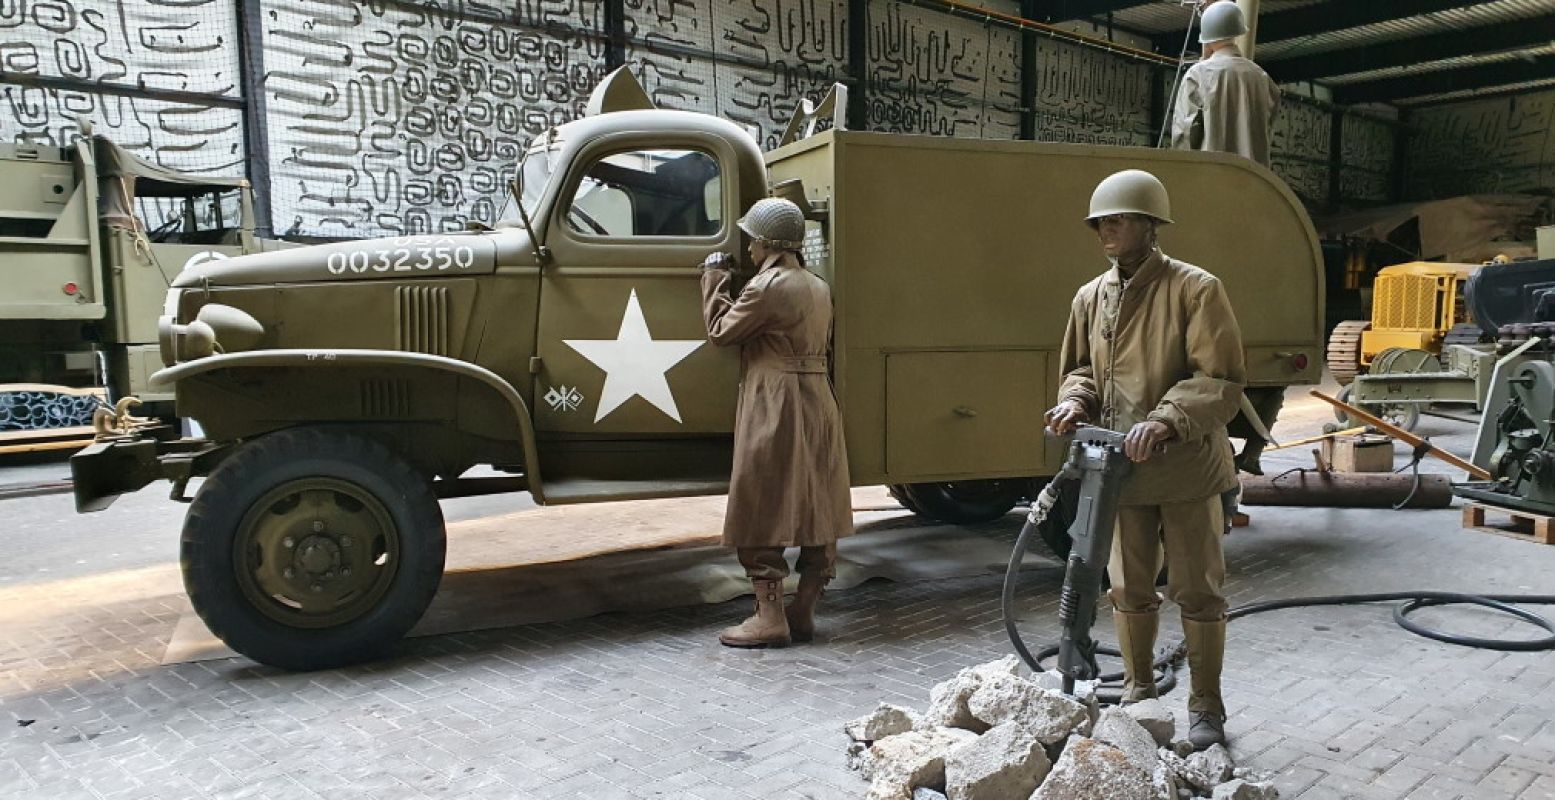 Oorlogsmuseum Overloon maakt ruimte tussen de vele legervoertuigen. Foto: Oorlogsmuseum Overloon